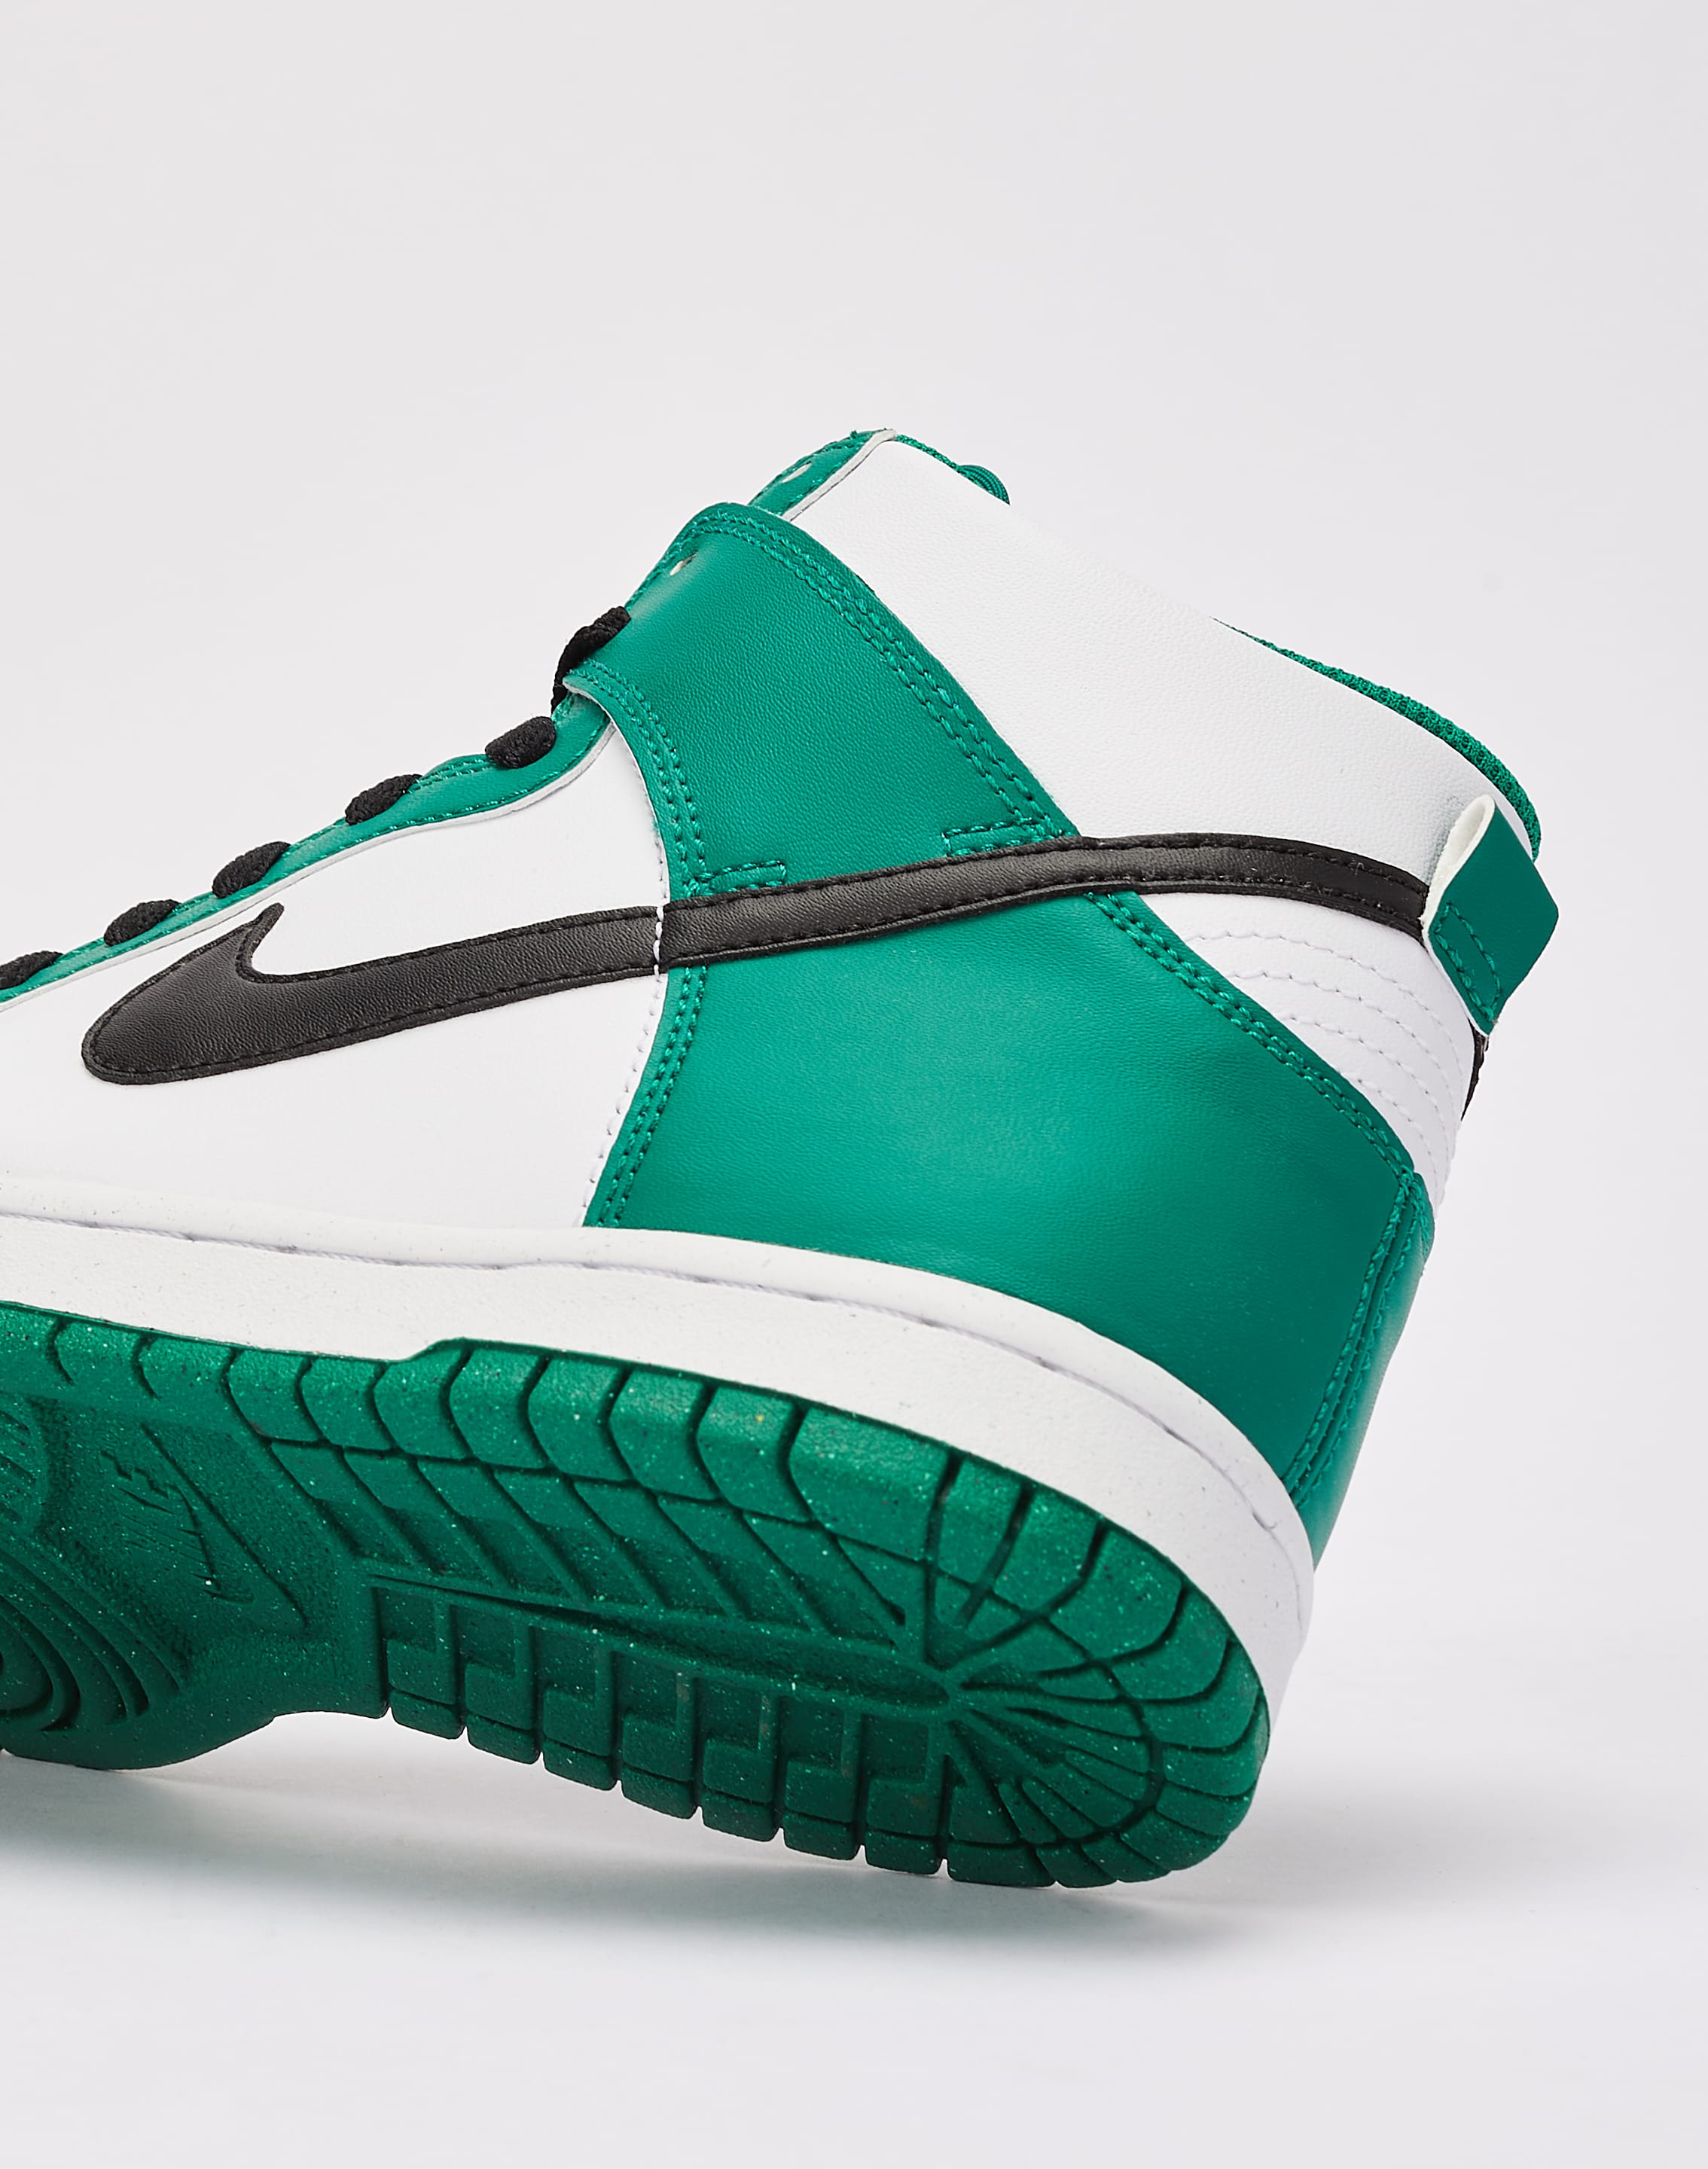 Nike Dunk: Boston Celtics V.1  Boston celtics, Nike dunks, Nike